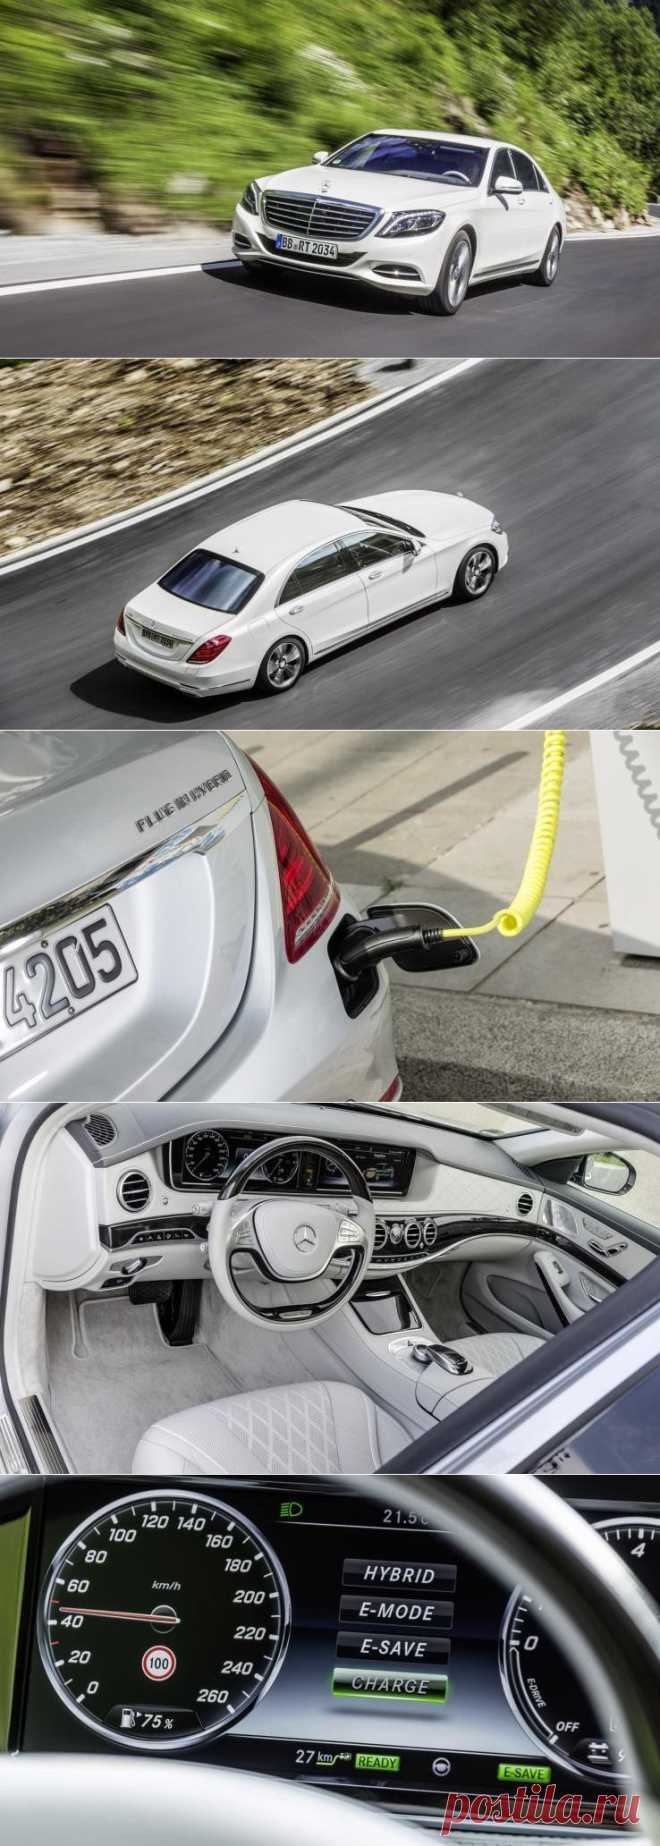 Гибридный седан люкс-класса Mercedes S550 выйдет в 2015 году / Новости hardware / 3DNews - Daily Digital Digest